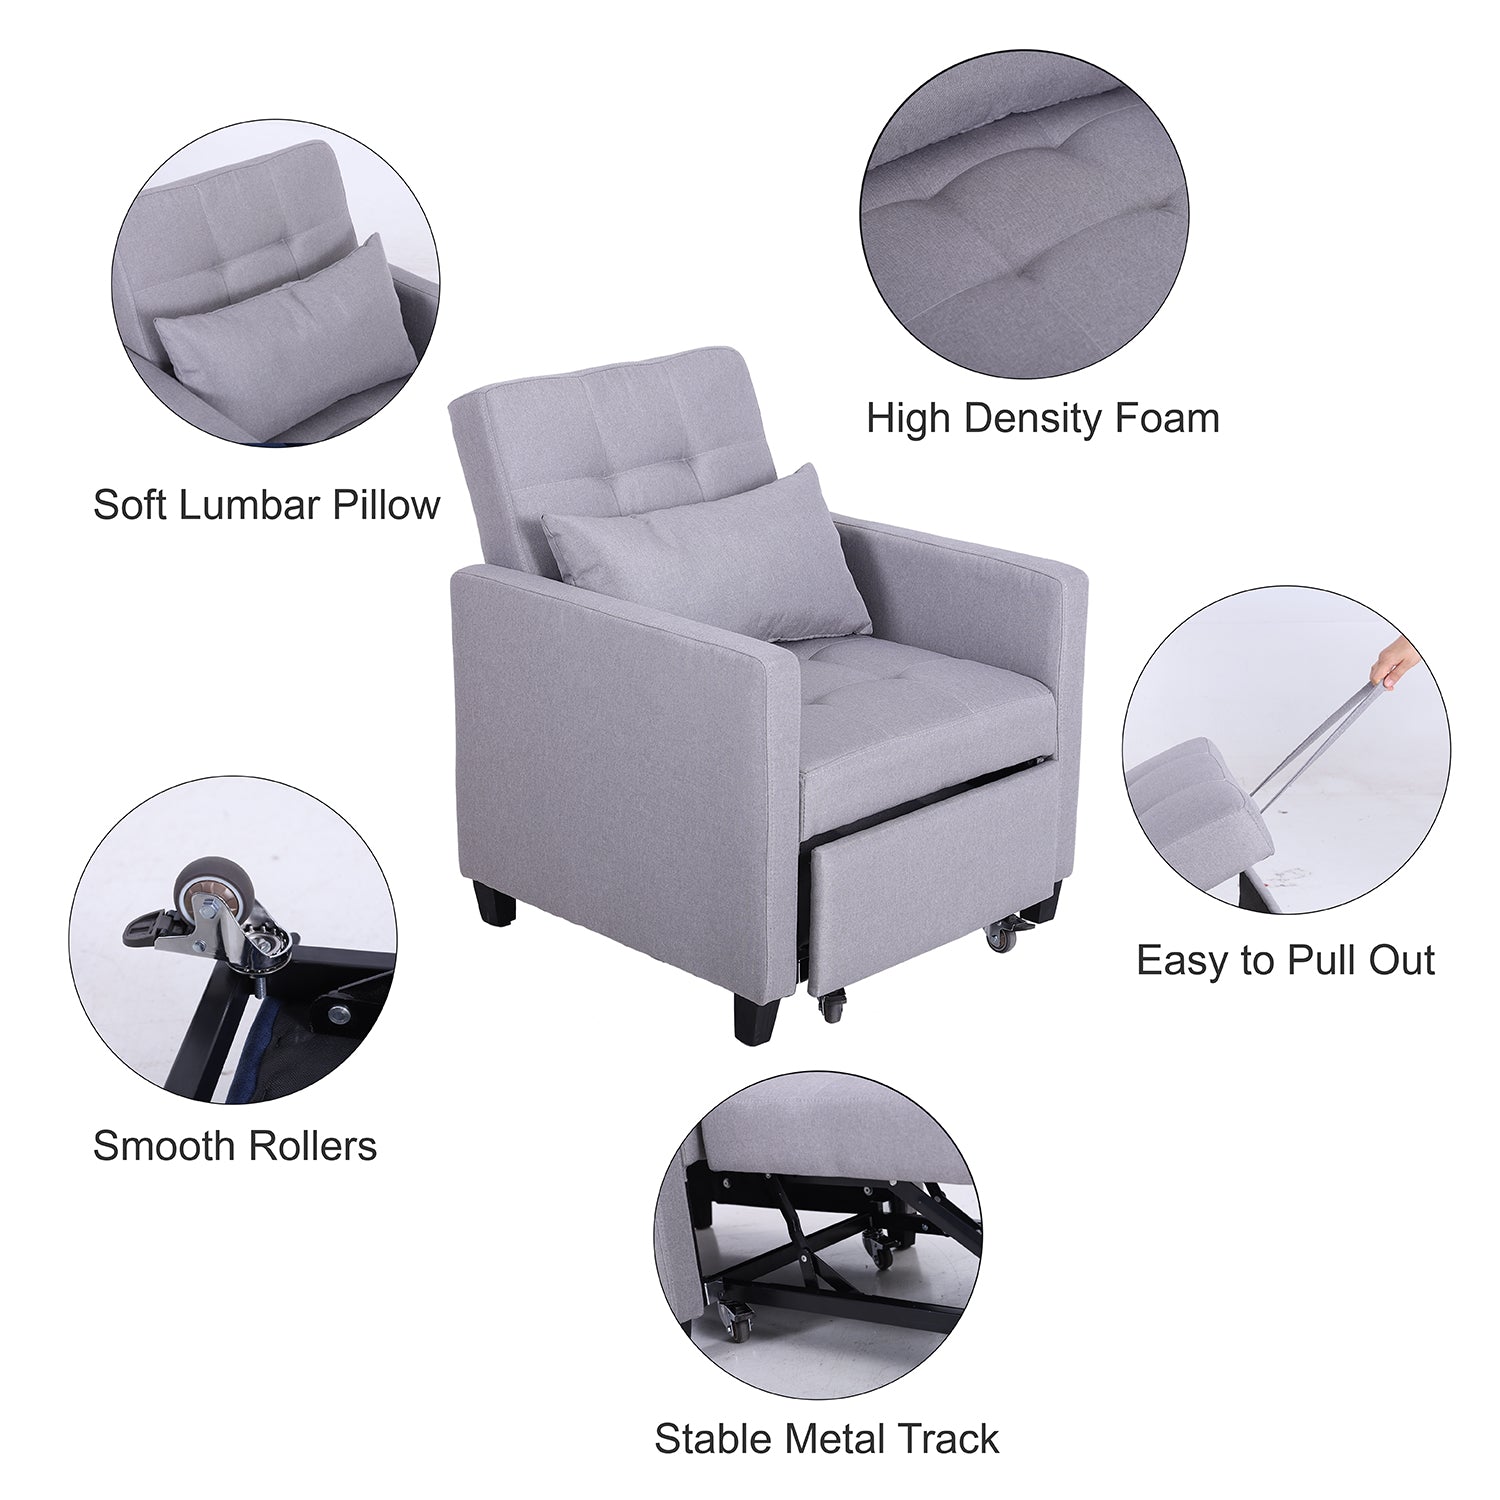 PHI VILLA Convertible Sofa Bed Living Room Recliner